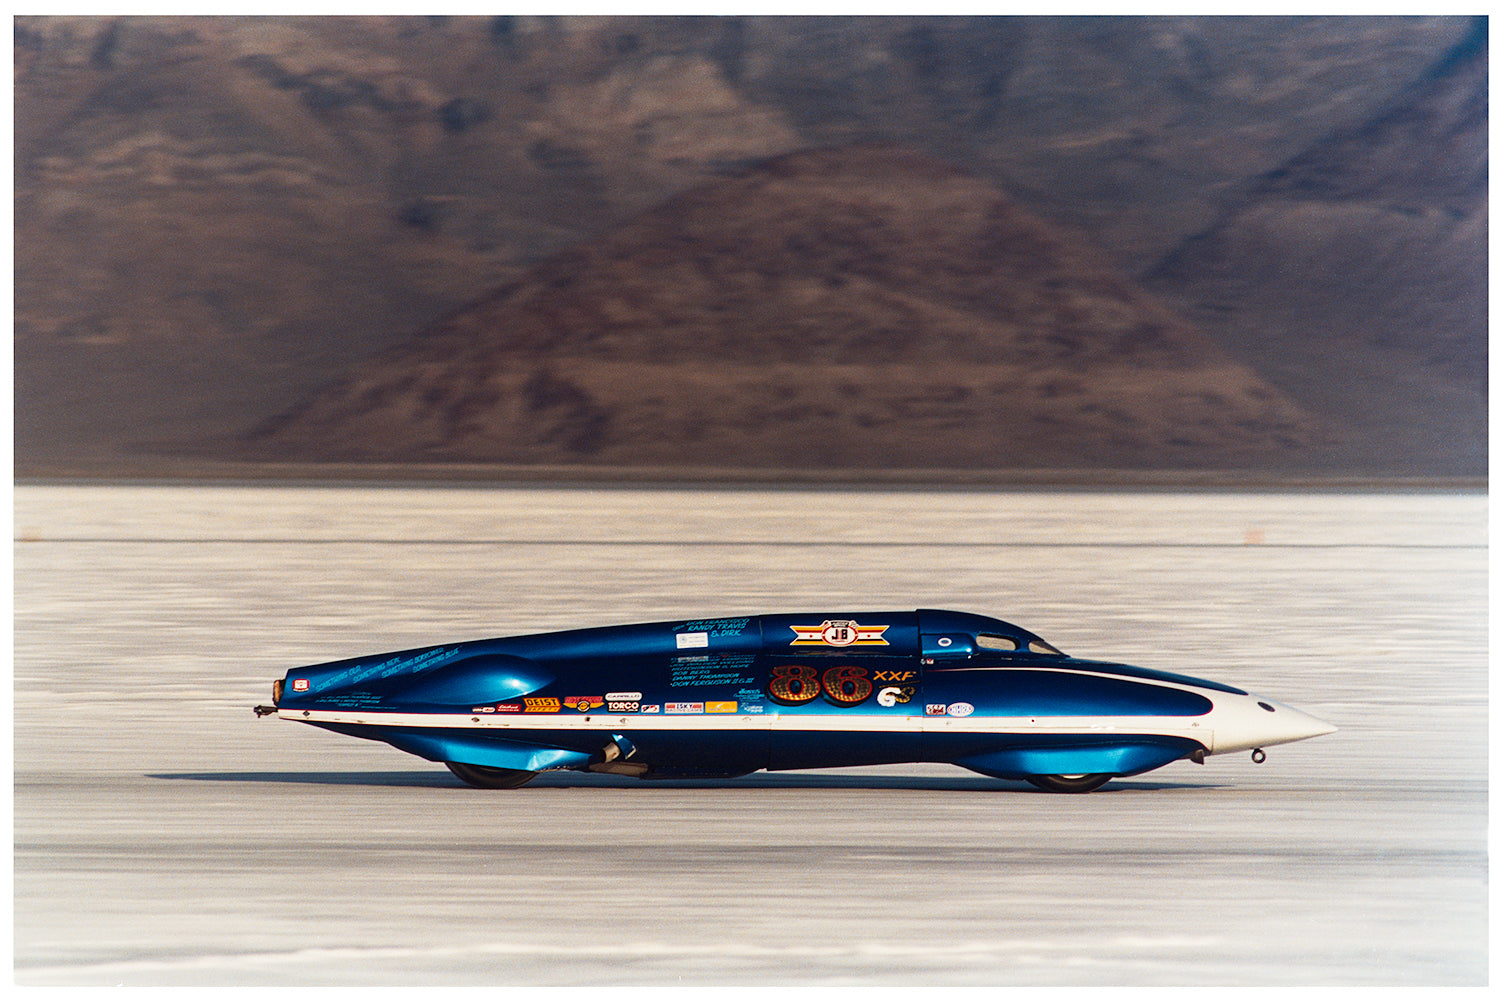 Blue racing car photograph by Richard Heeps against the landscape of Bonneville Salt Flats.